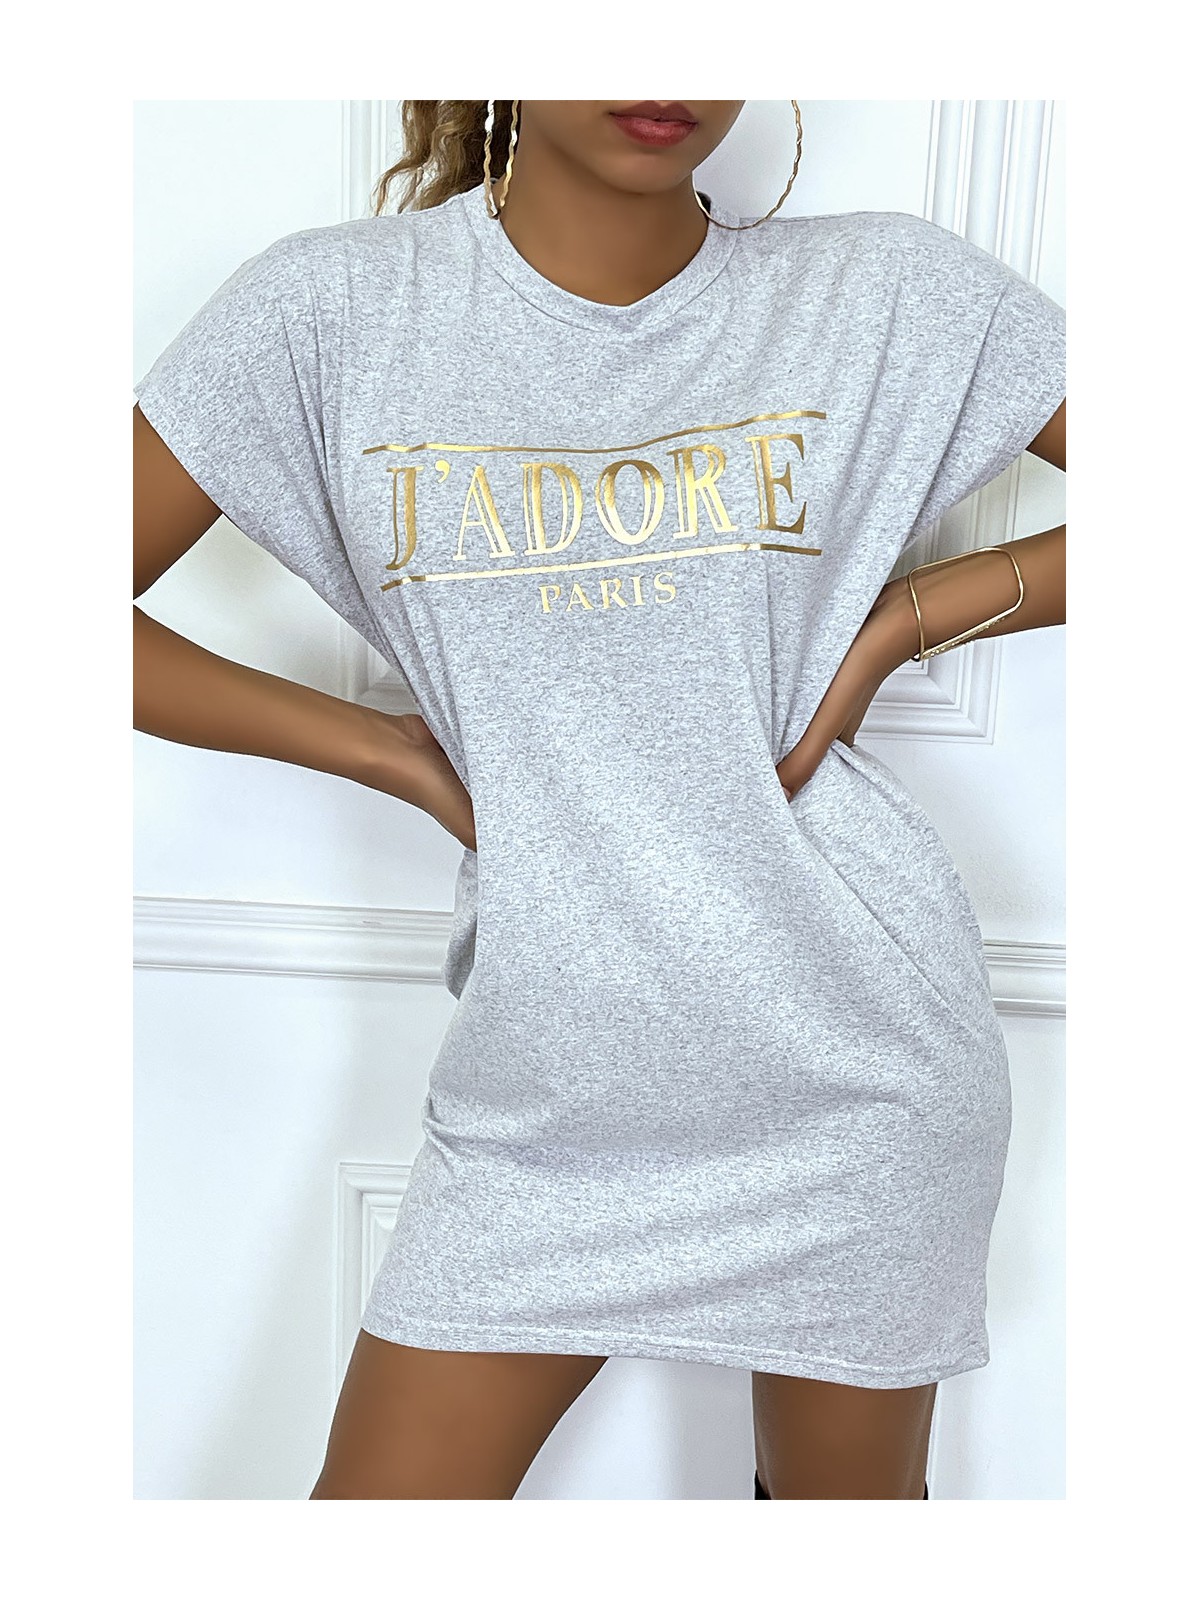 Robe T-shirt courte asymétrique gris avec écriture doré "J'adore" et poches - 6